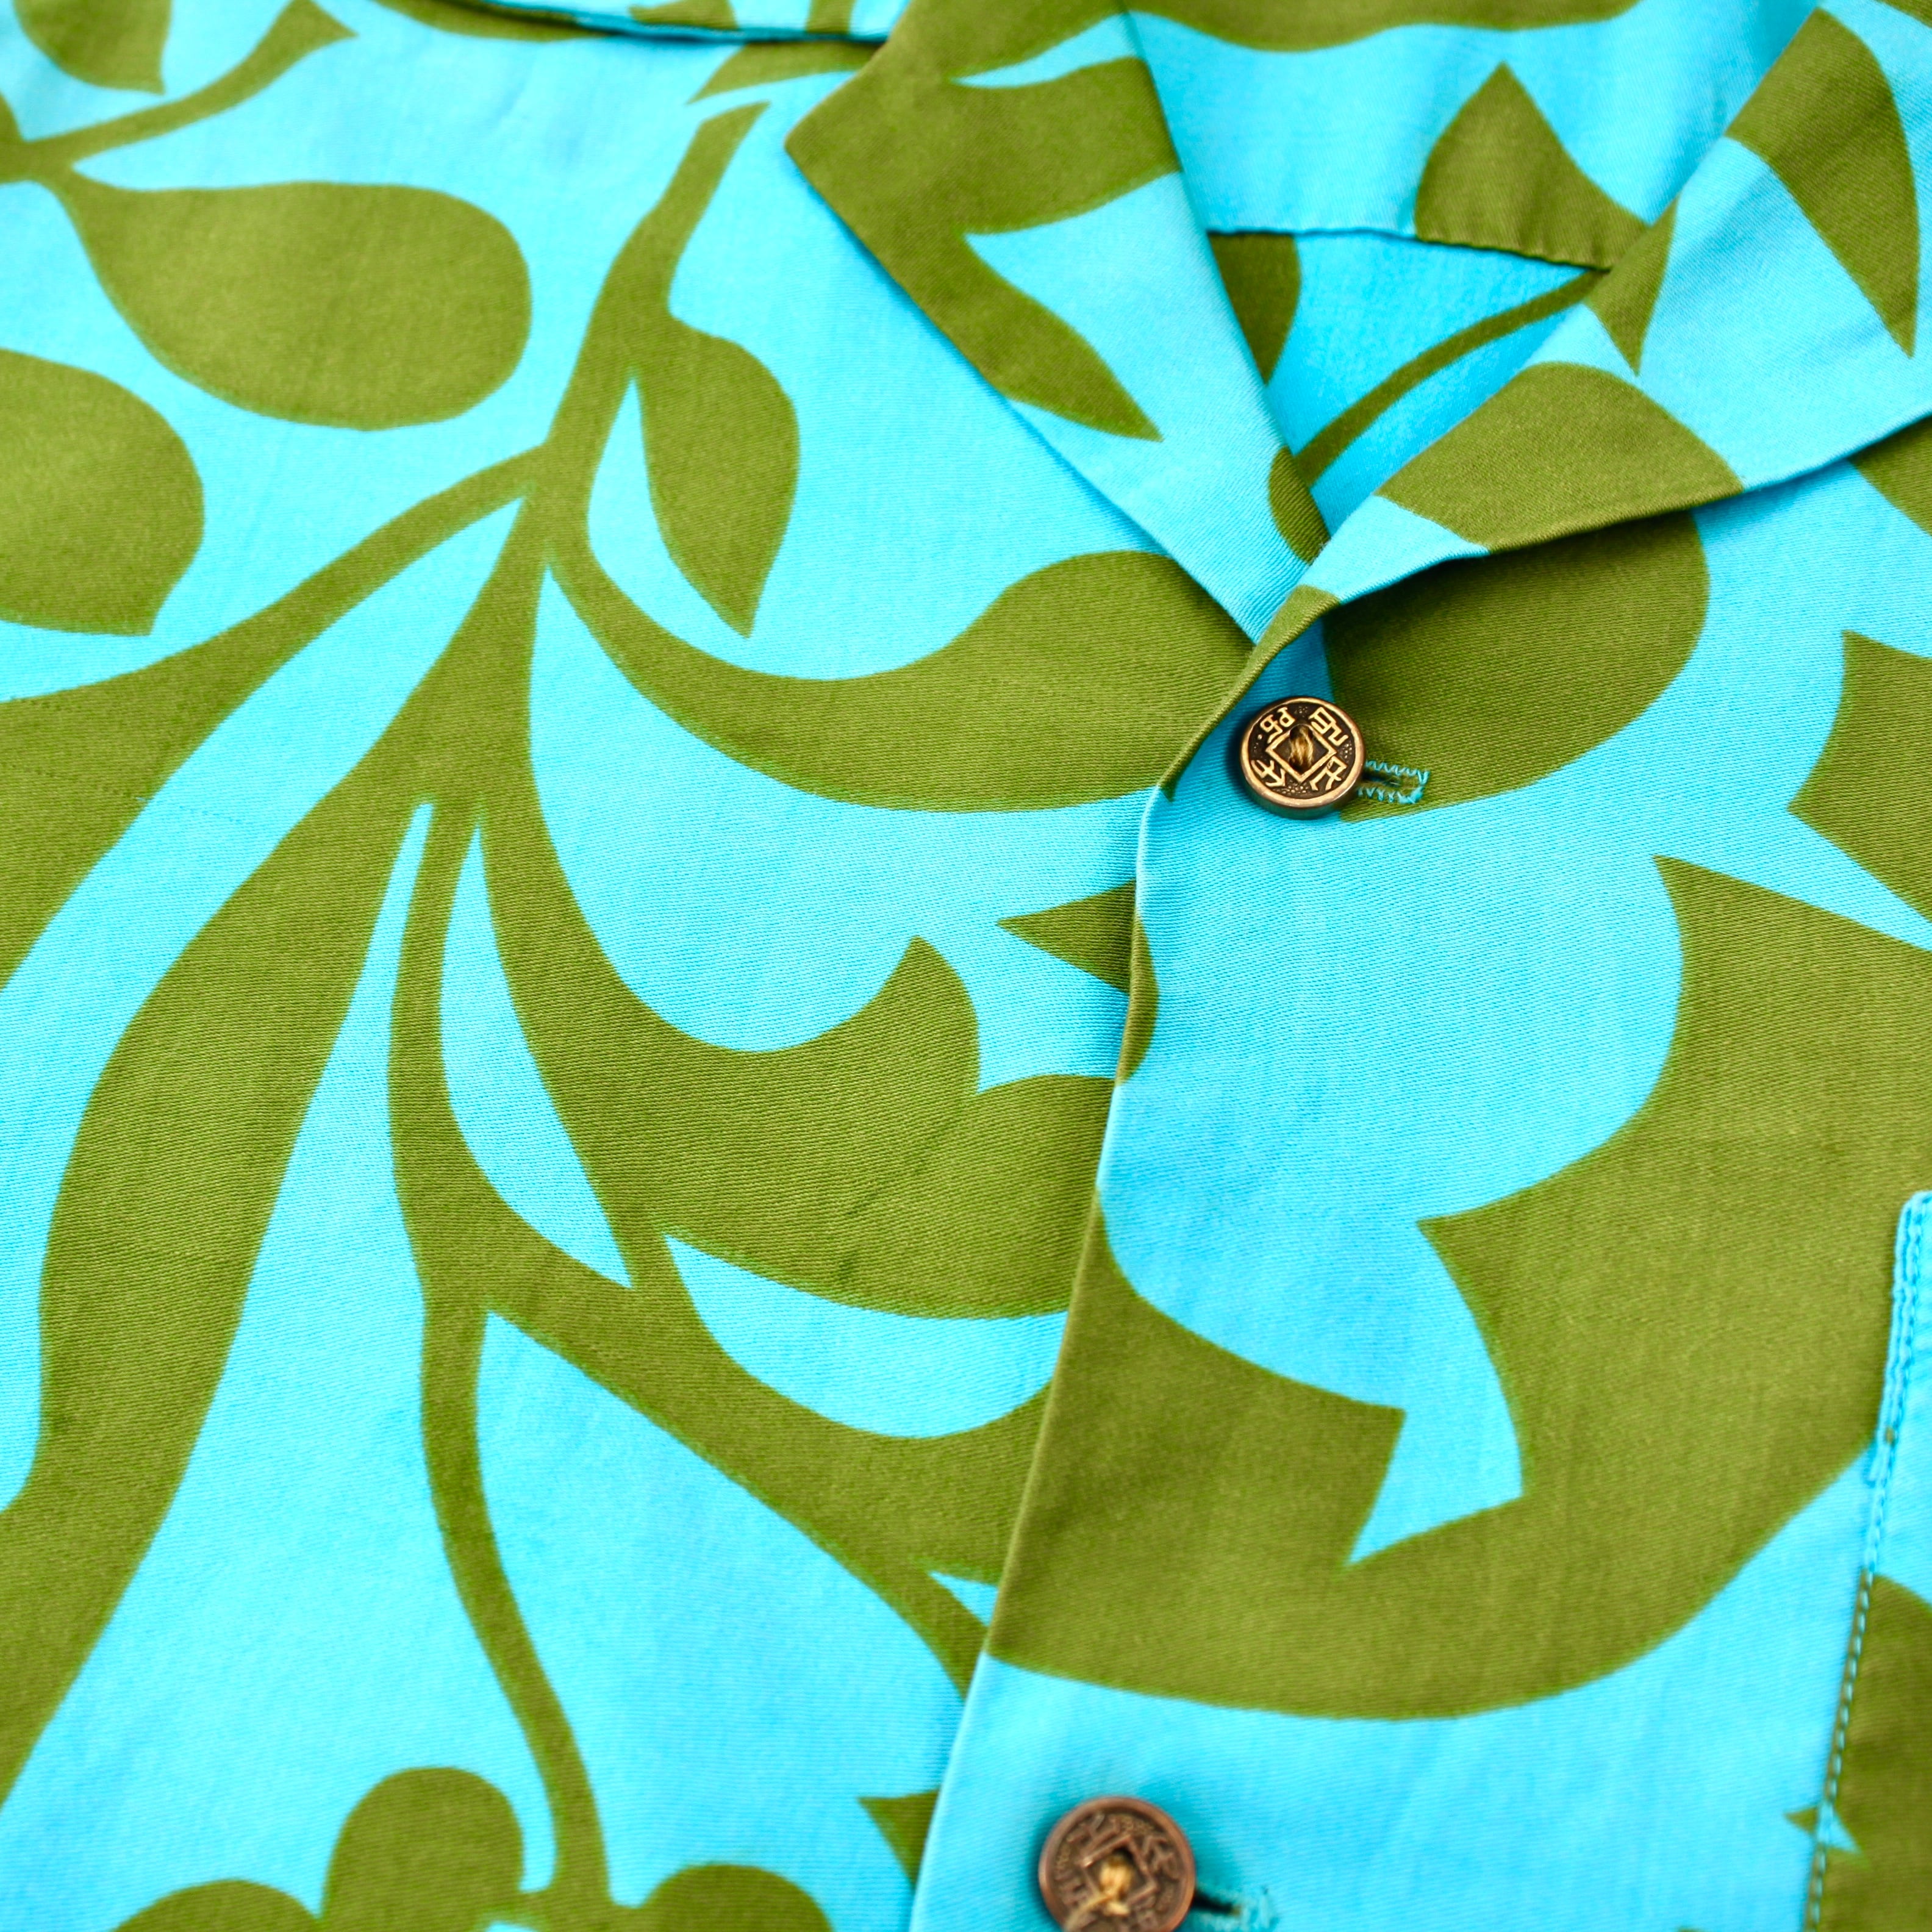 0578. 1960's cotton Hawaiian shirt 総柄 グリーン ブルー コットン